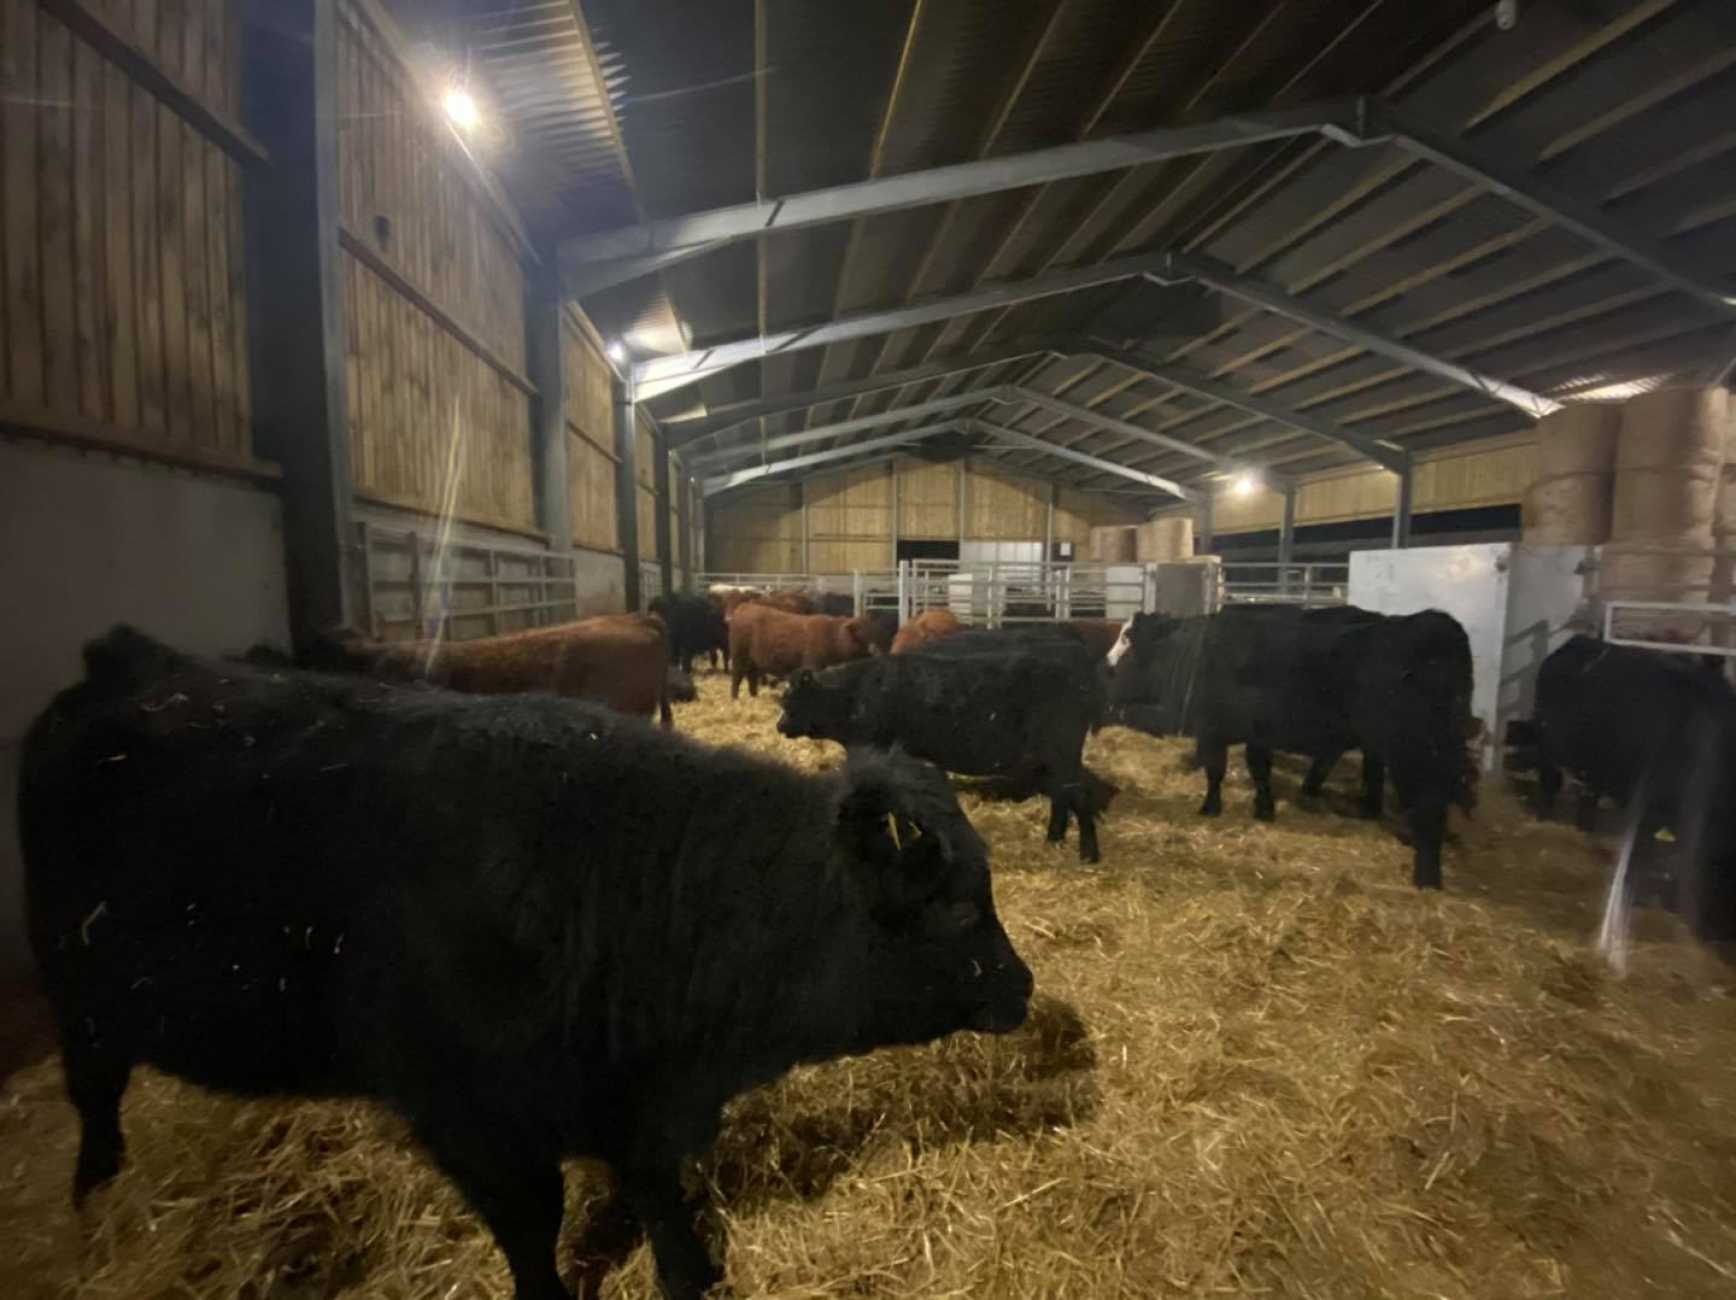 Cattle Building & Straw Storage